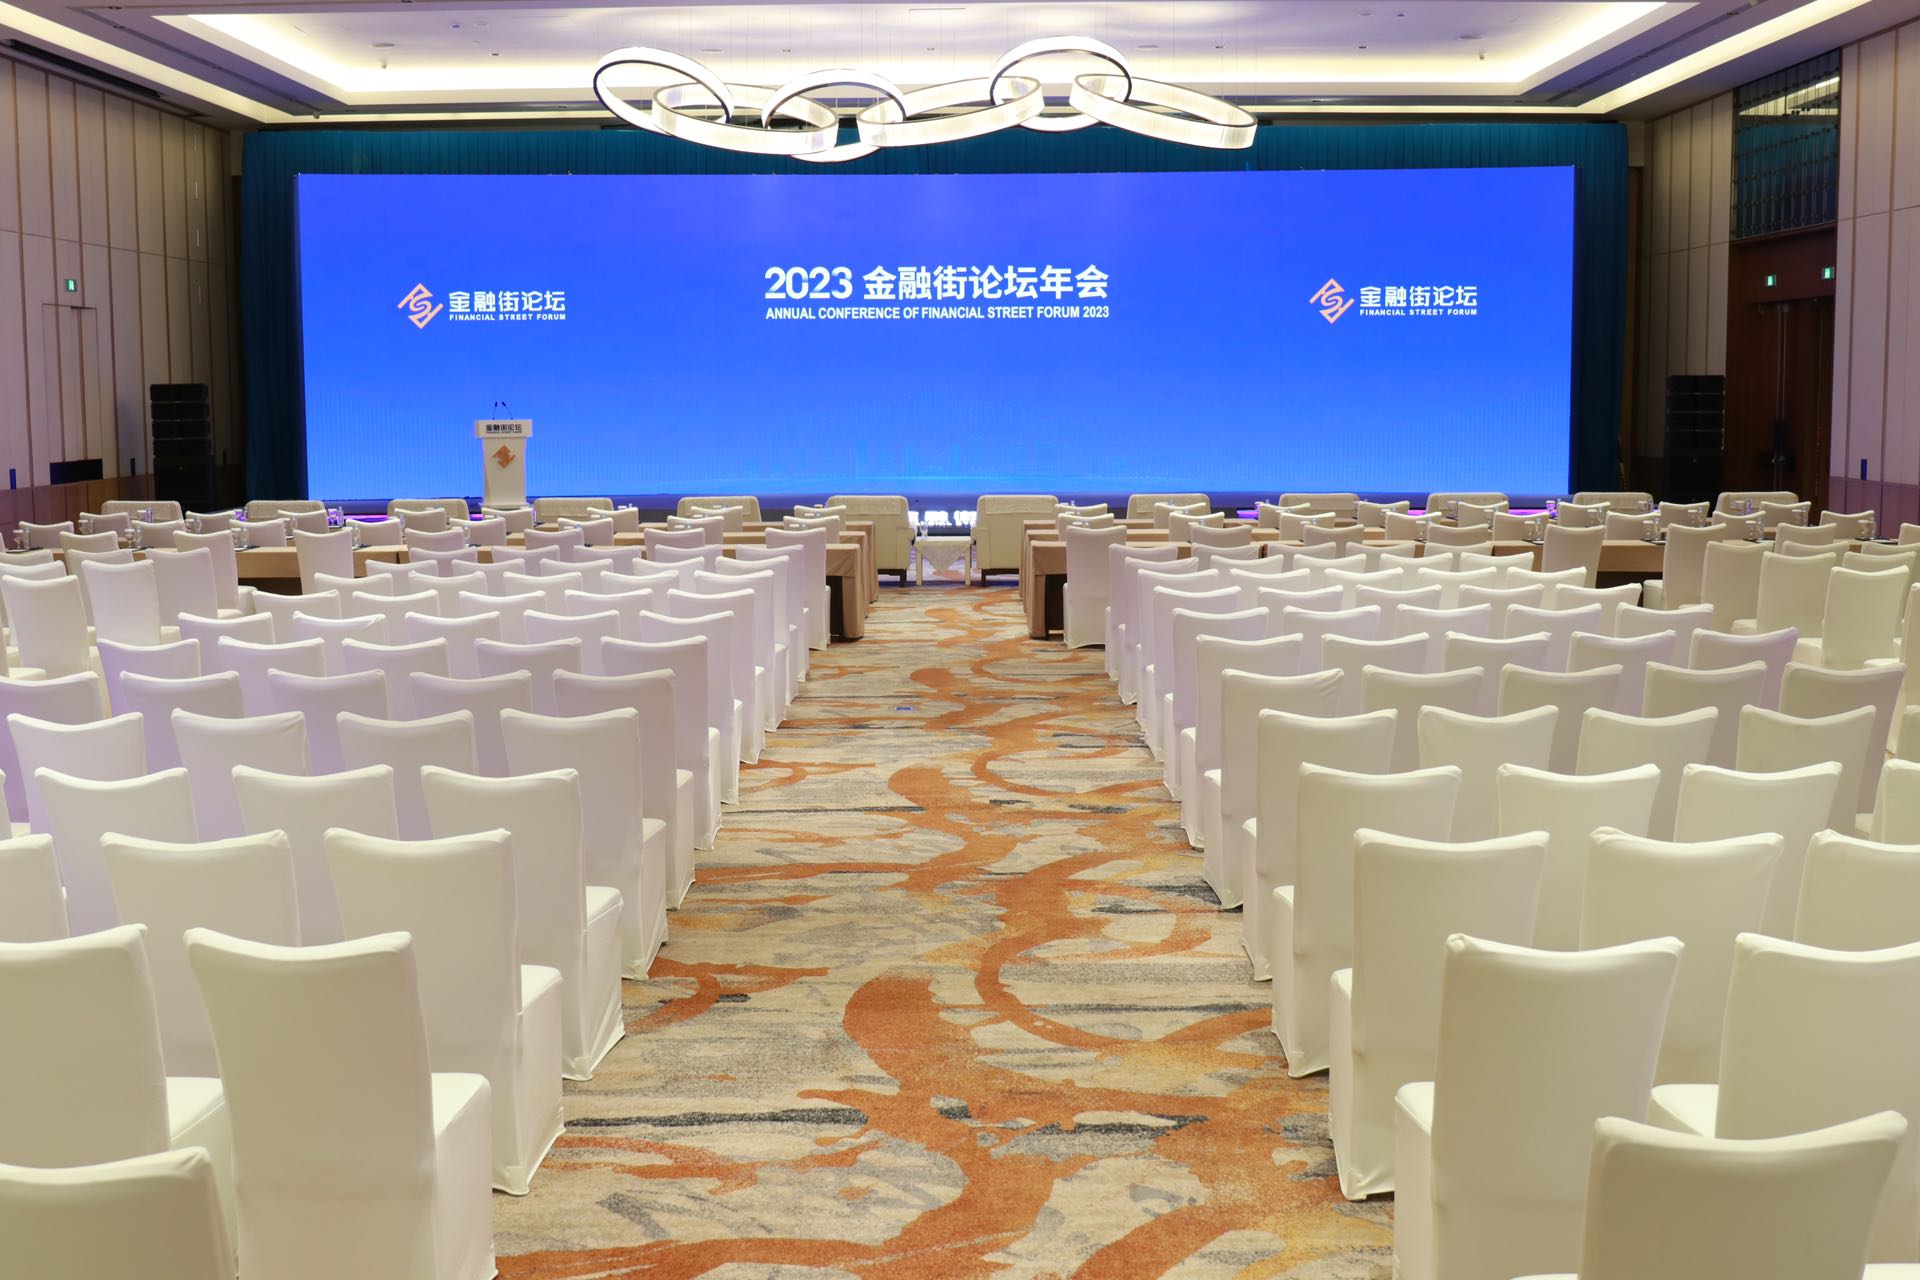 北京金融街威斯汀大酒店以高标准服务为2023年金融街论坛年会保驾护航